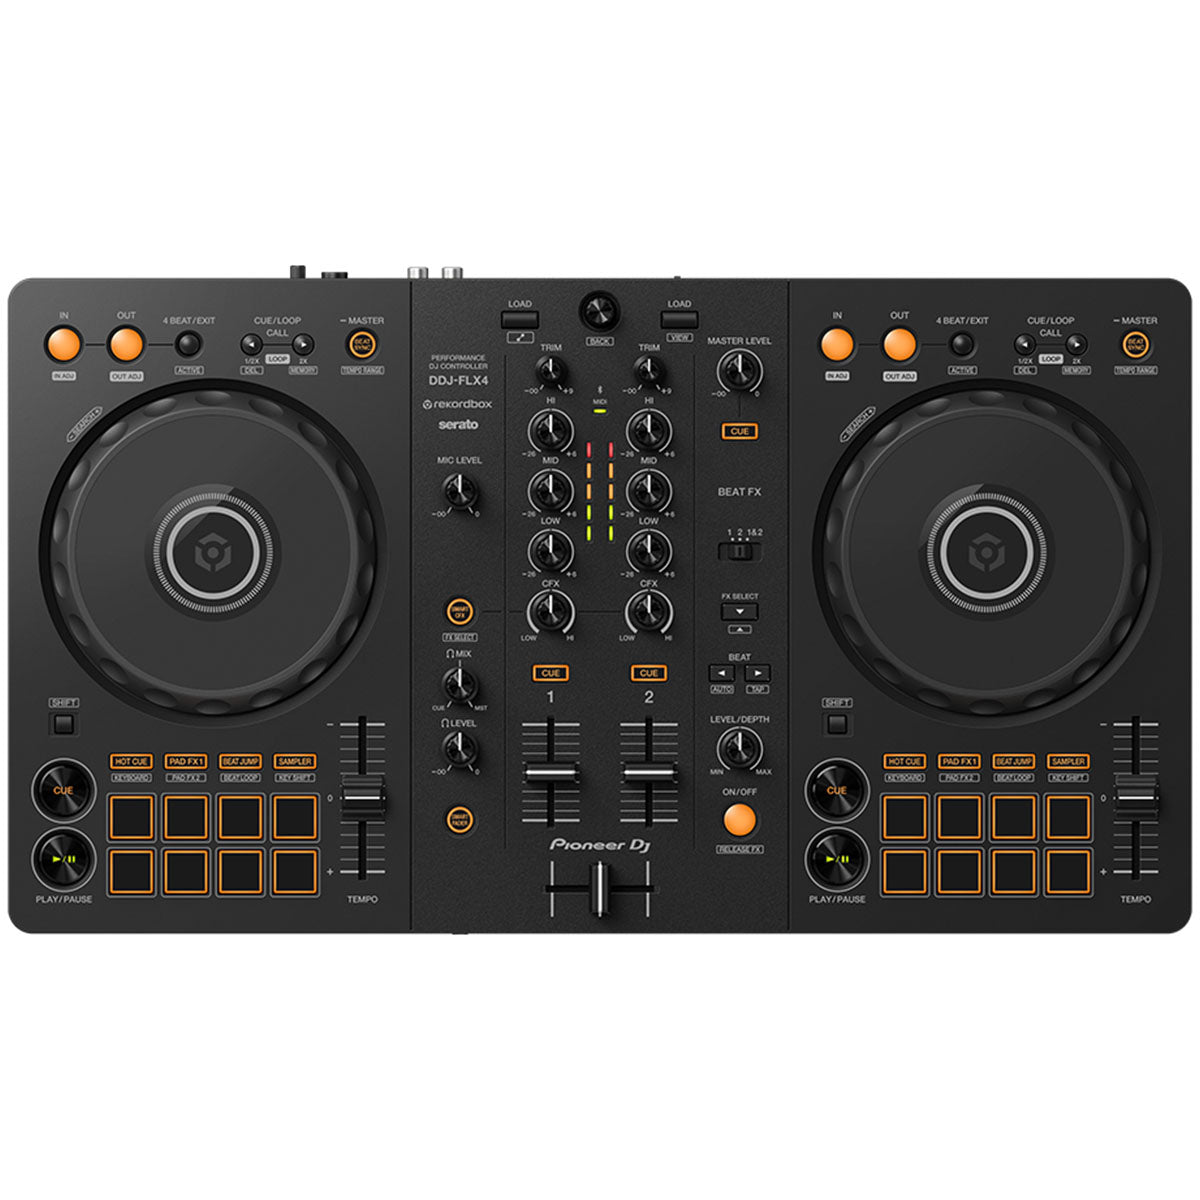 Pioneer DDJ-FLX4 DJ Controller 2-Channel for Rekordbox & Serato DJ Pro DDJFLX4